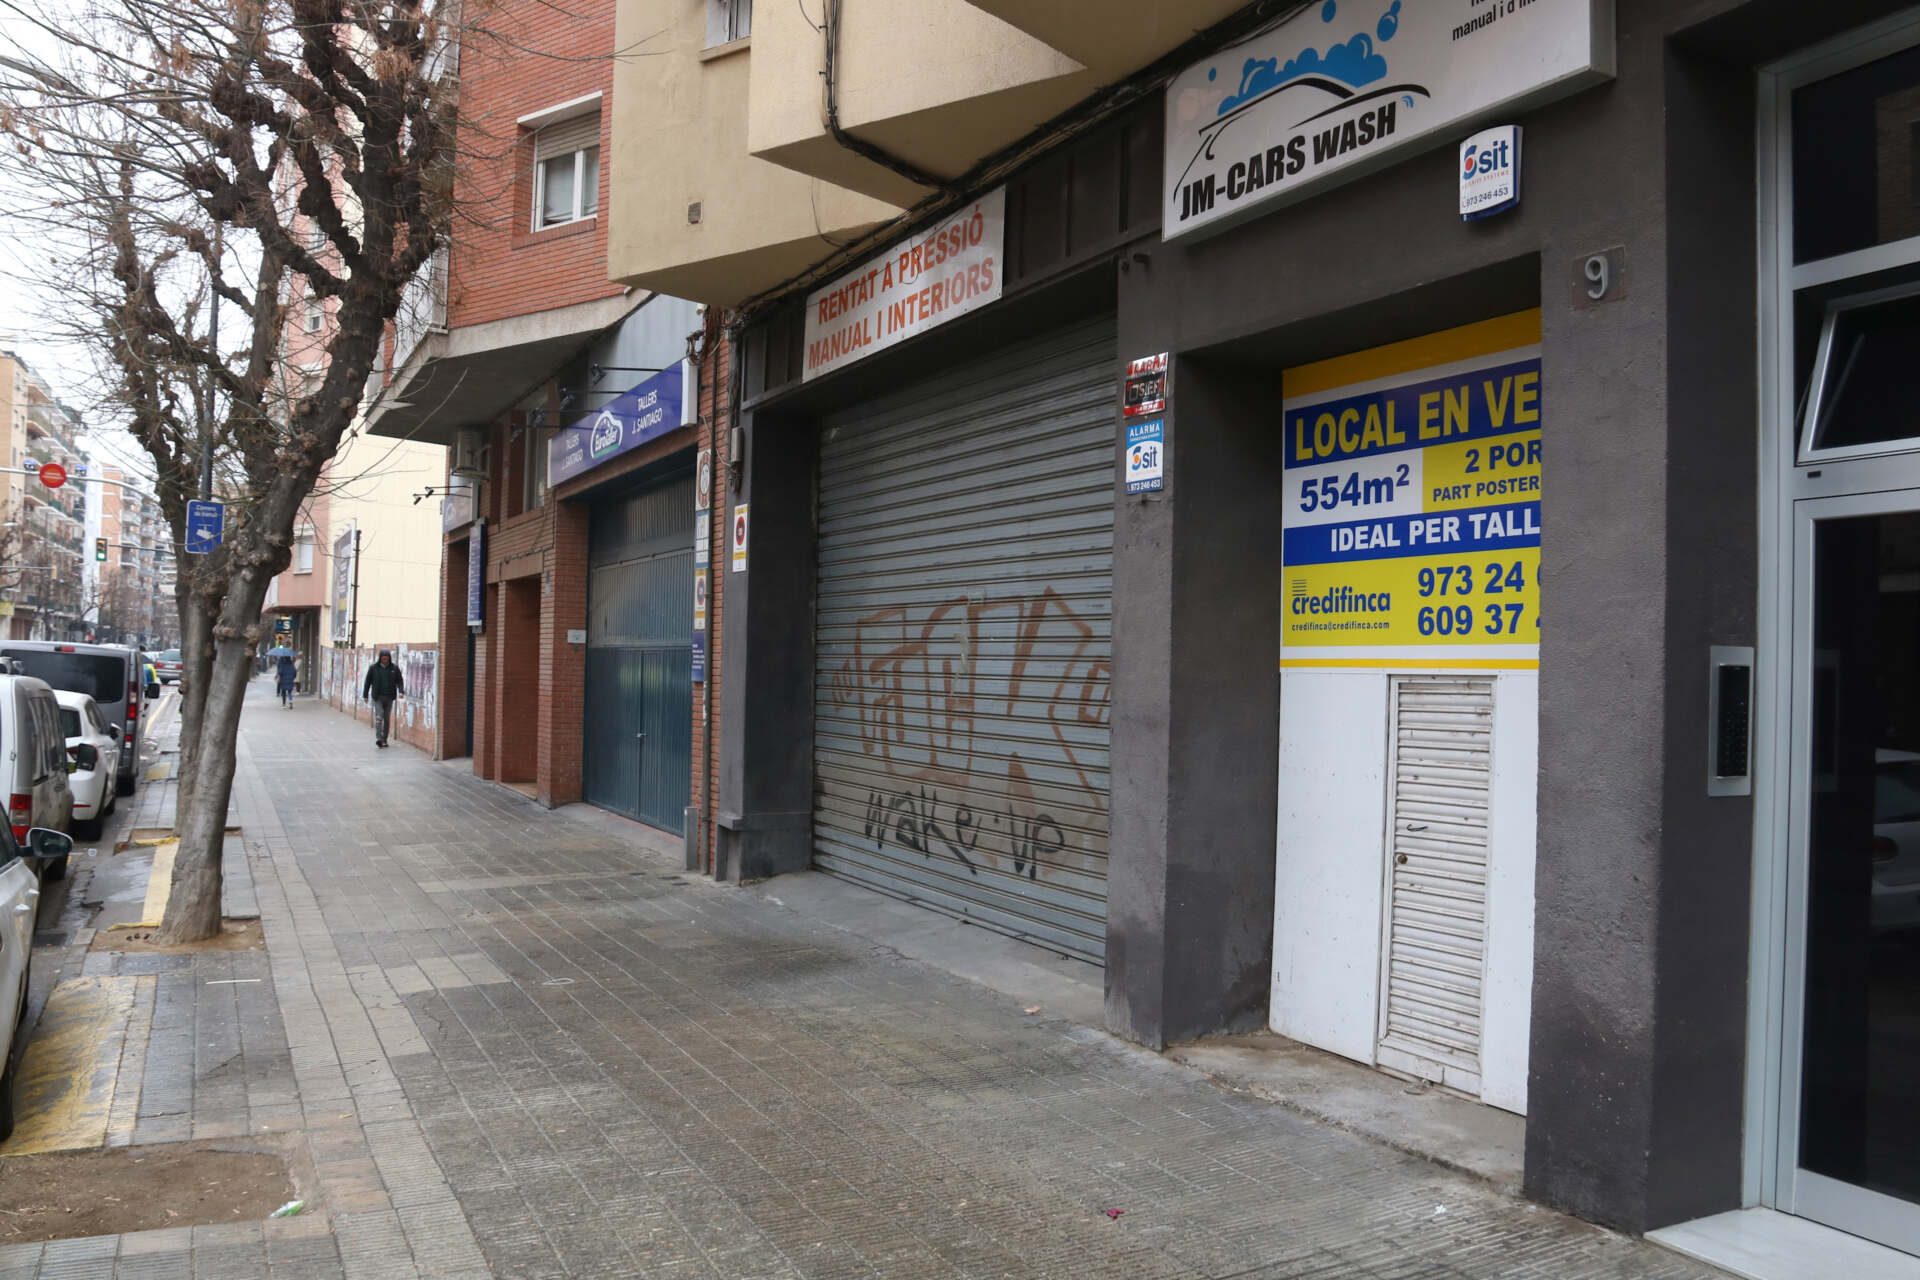 La comunitat musulmana més nombrosa de Lleida ja té local